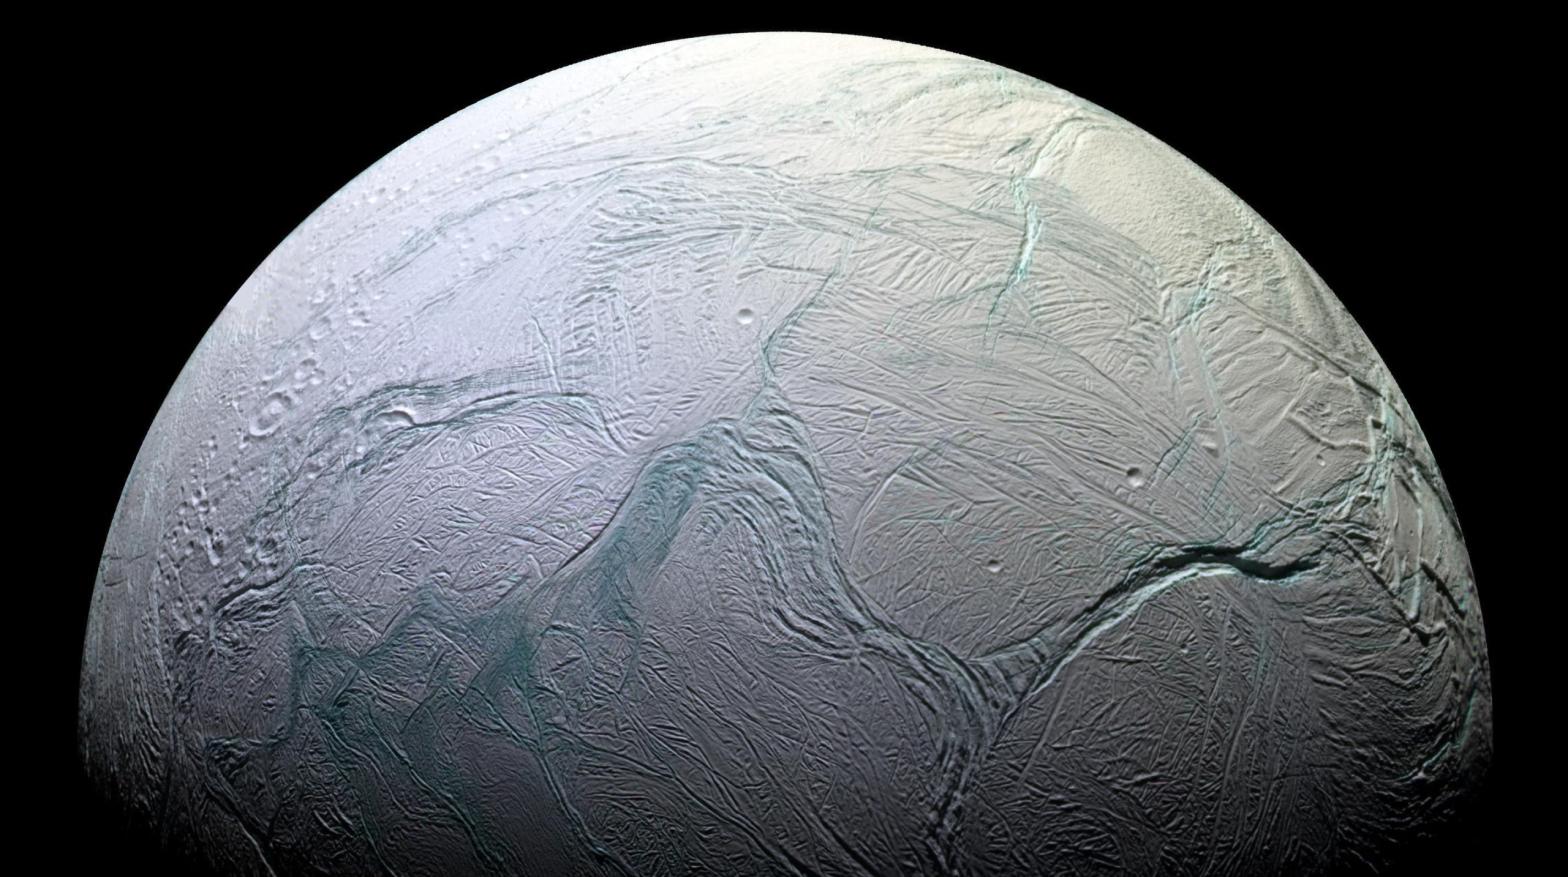 Saturn's moon Enceladus. (Image: NASA/JPL/Space Science Institute)